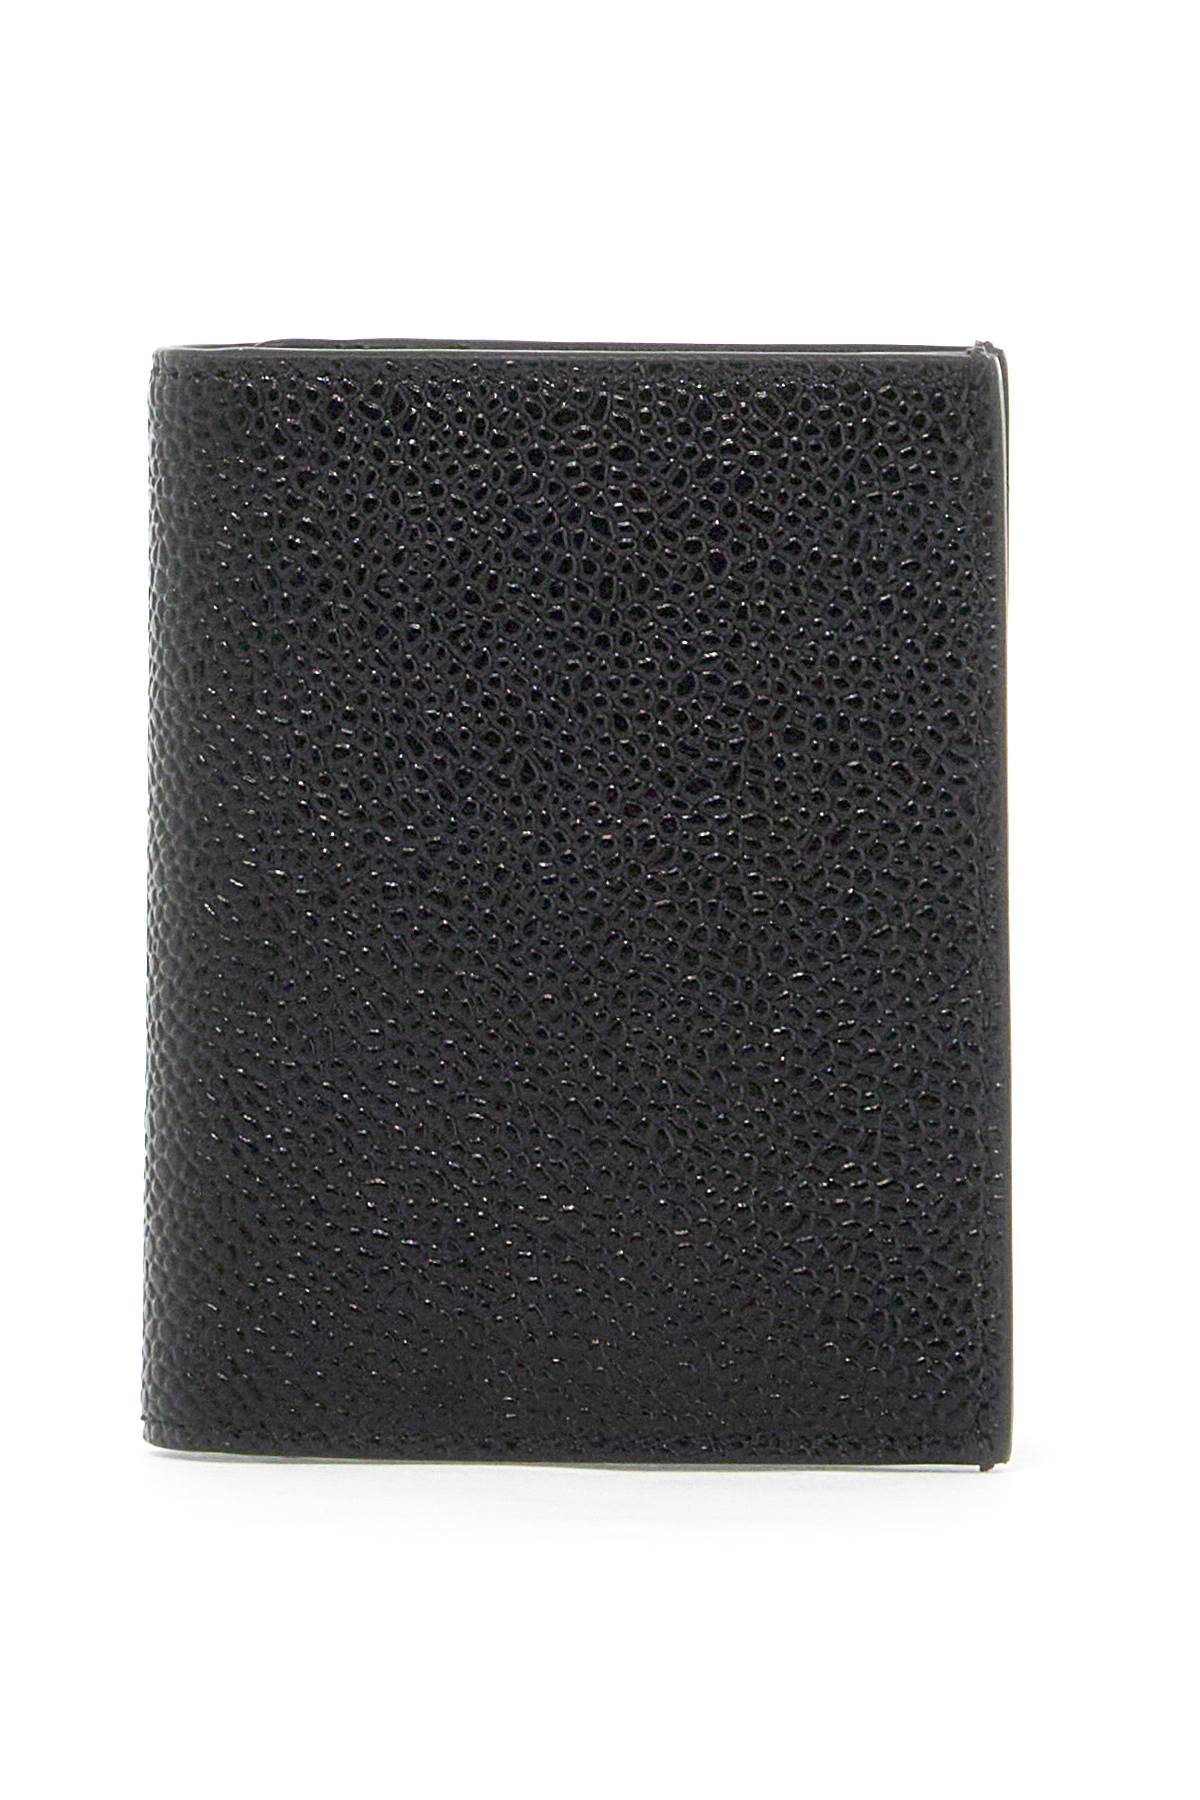 "Bifold Hammered Leather Card Holder" - Black